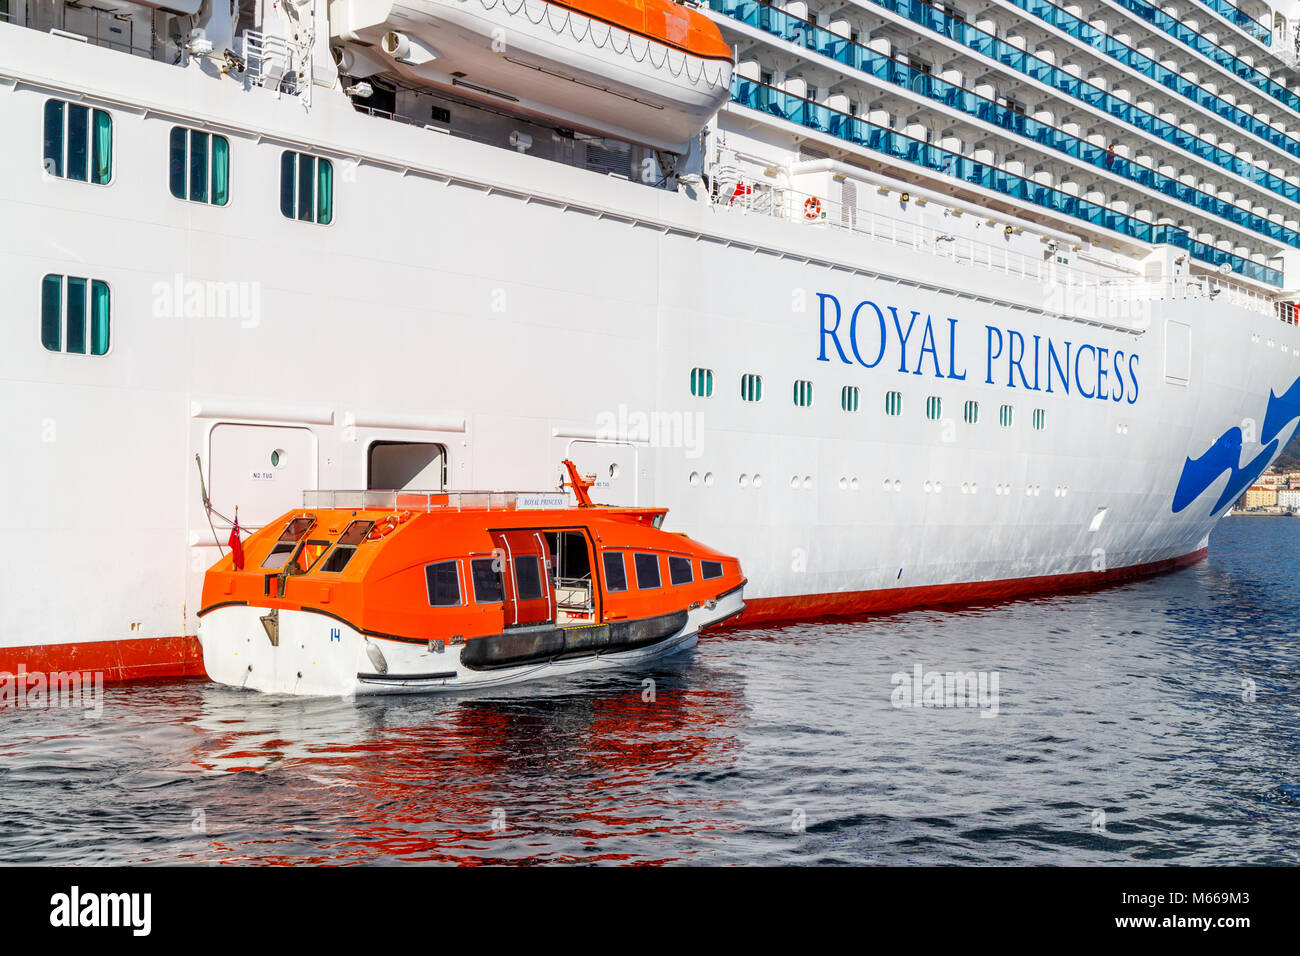 Ausschreibung neben der Royal Princess Kreuzfahrtschiff, Ajaccia Hafen, Korsika, Frankreich Stockfoto